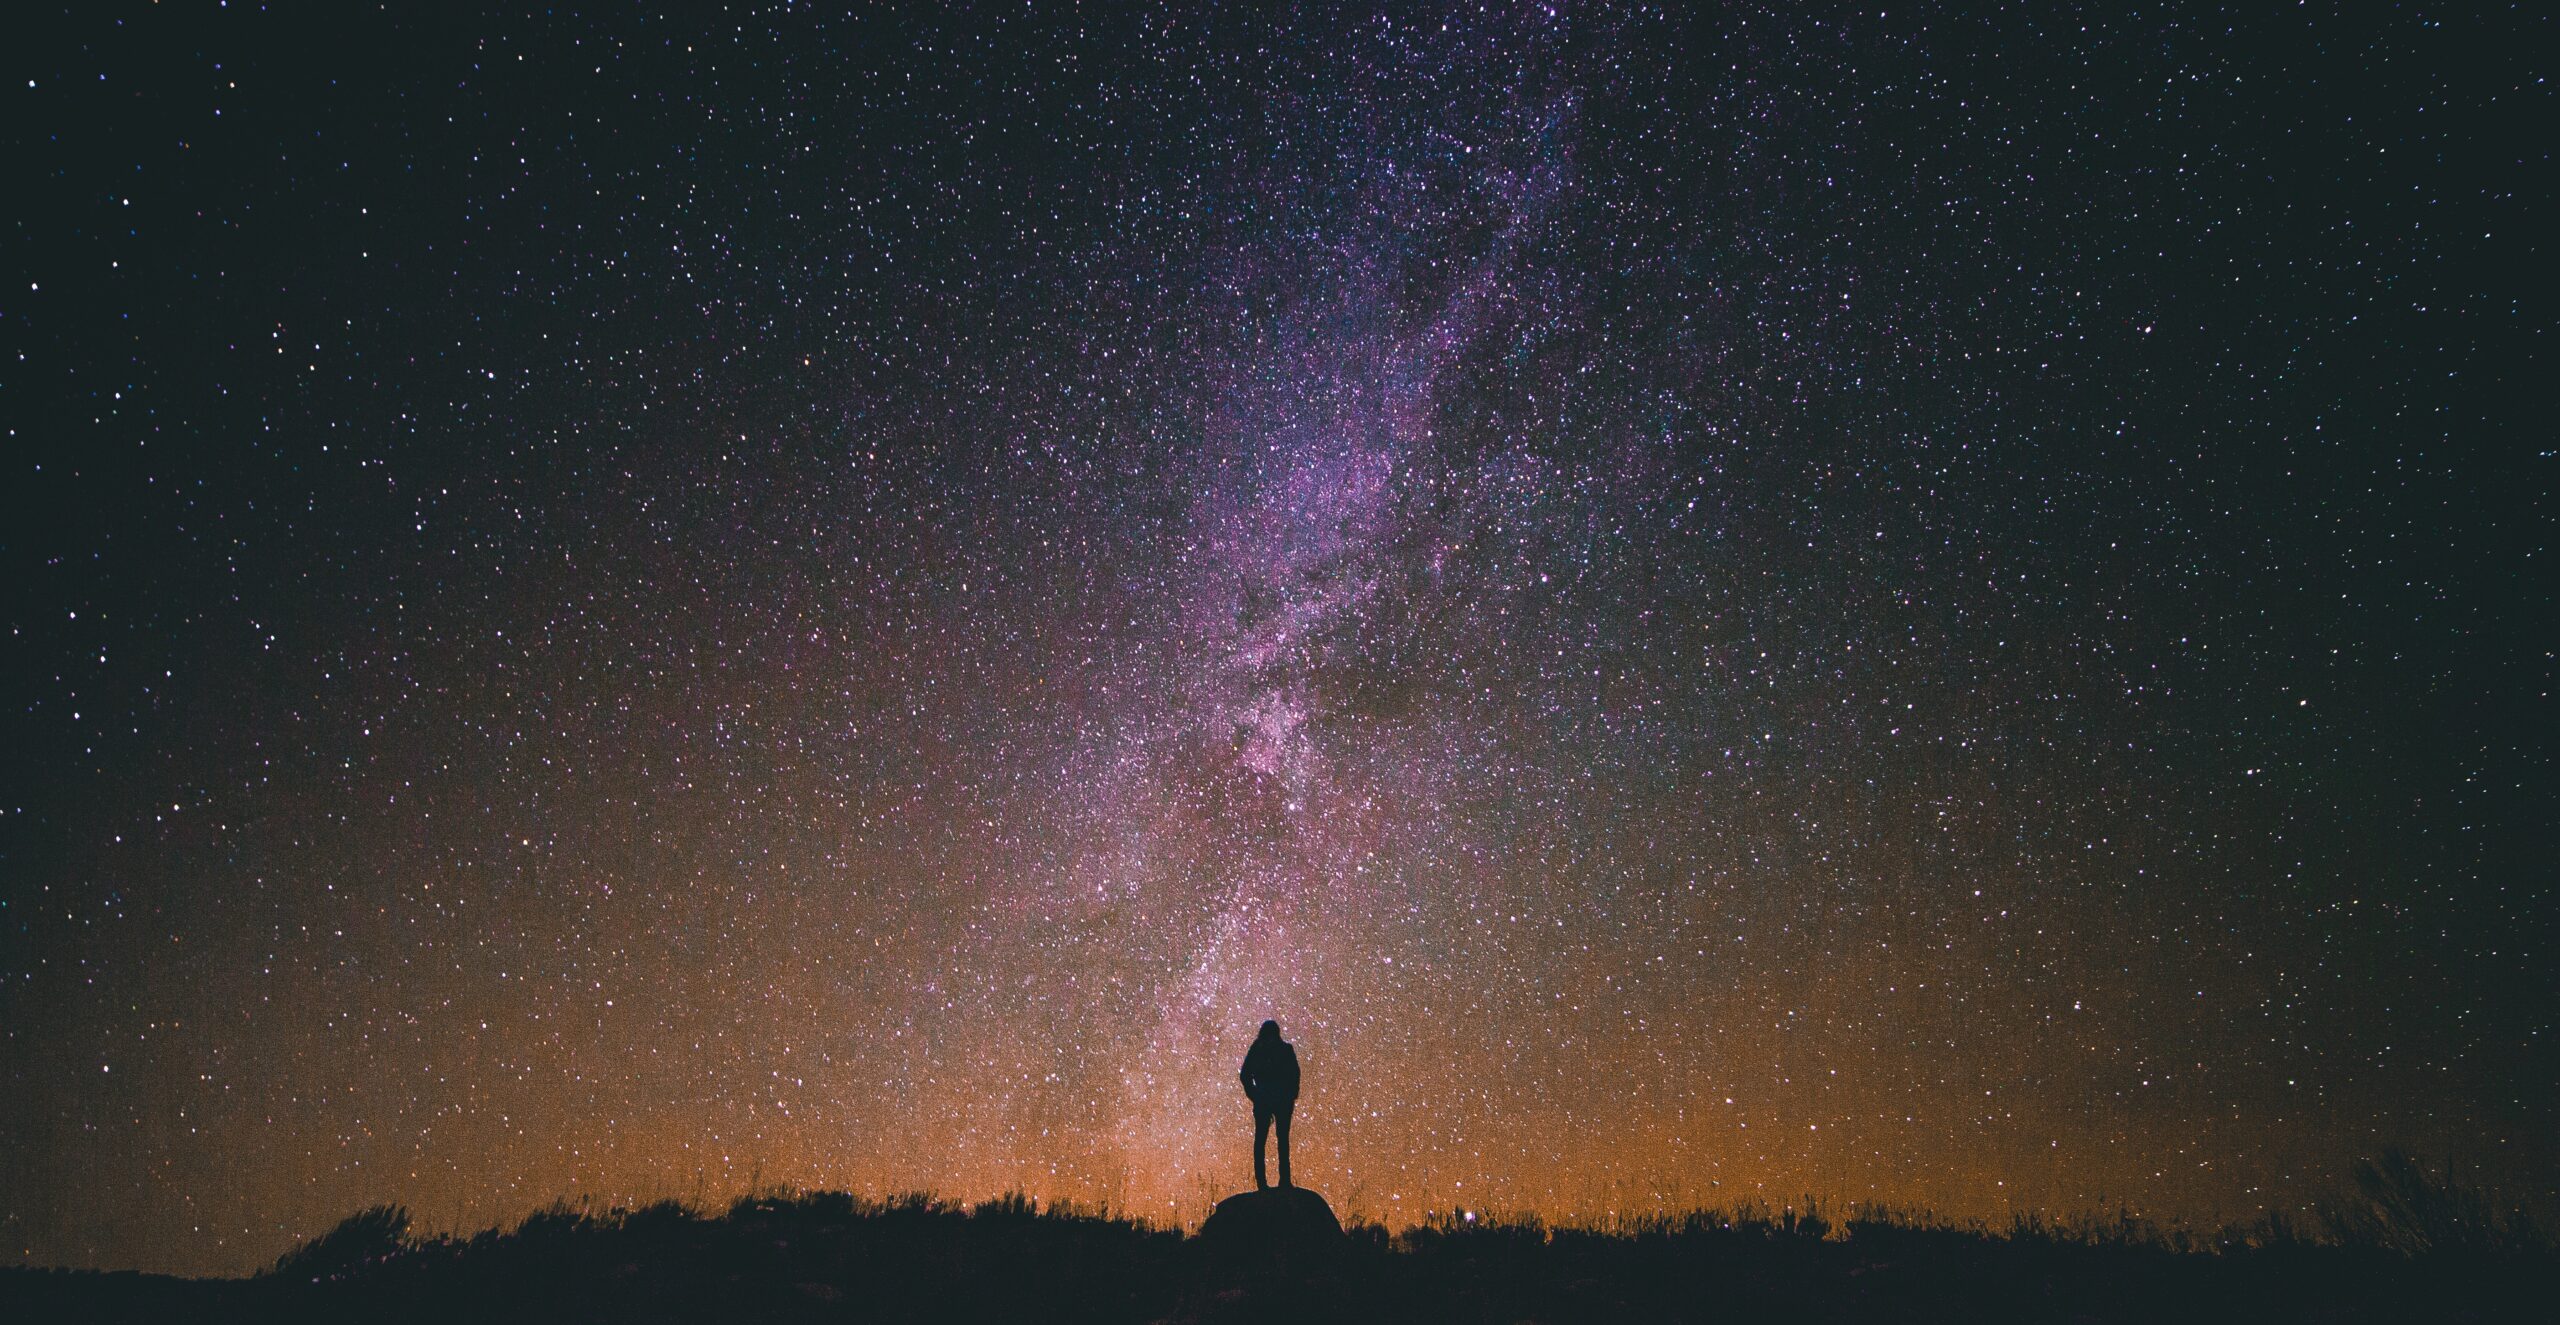 Humano mirando al horizonte estrellado